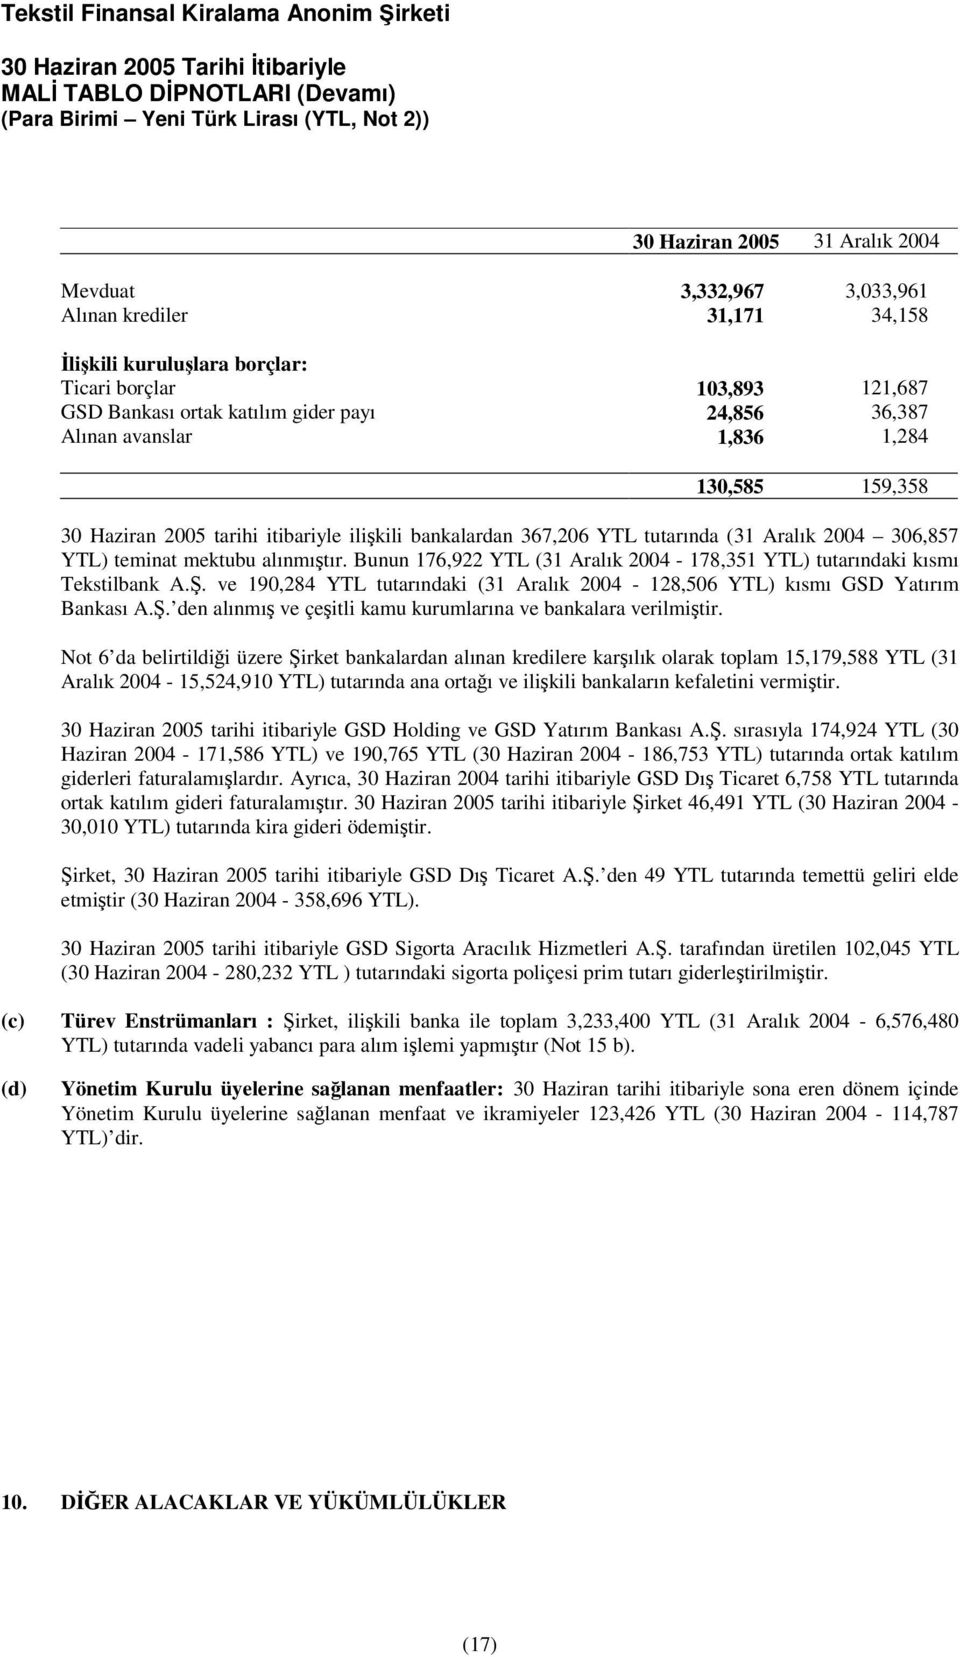 Bunun 176,922 YTL (31 Aralık 2004-178,351 YTL) tutarındaki kısmı Tekstilbank A.. ve 190,284 YTL tutarındaki (31 Aralık 2004-128,506 YTL) kısmı GSD Yatırım Bankası A.